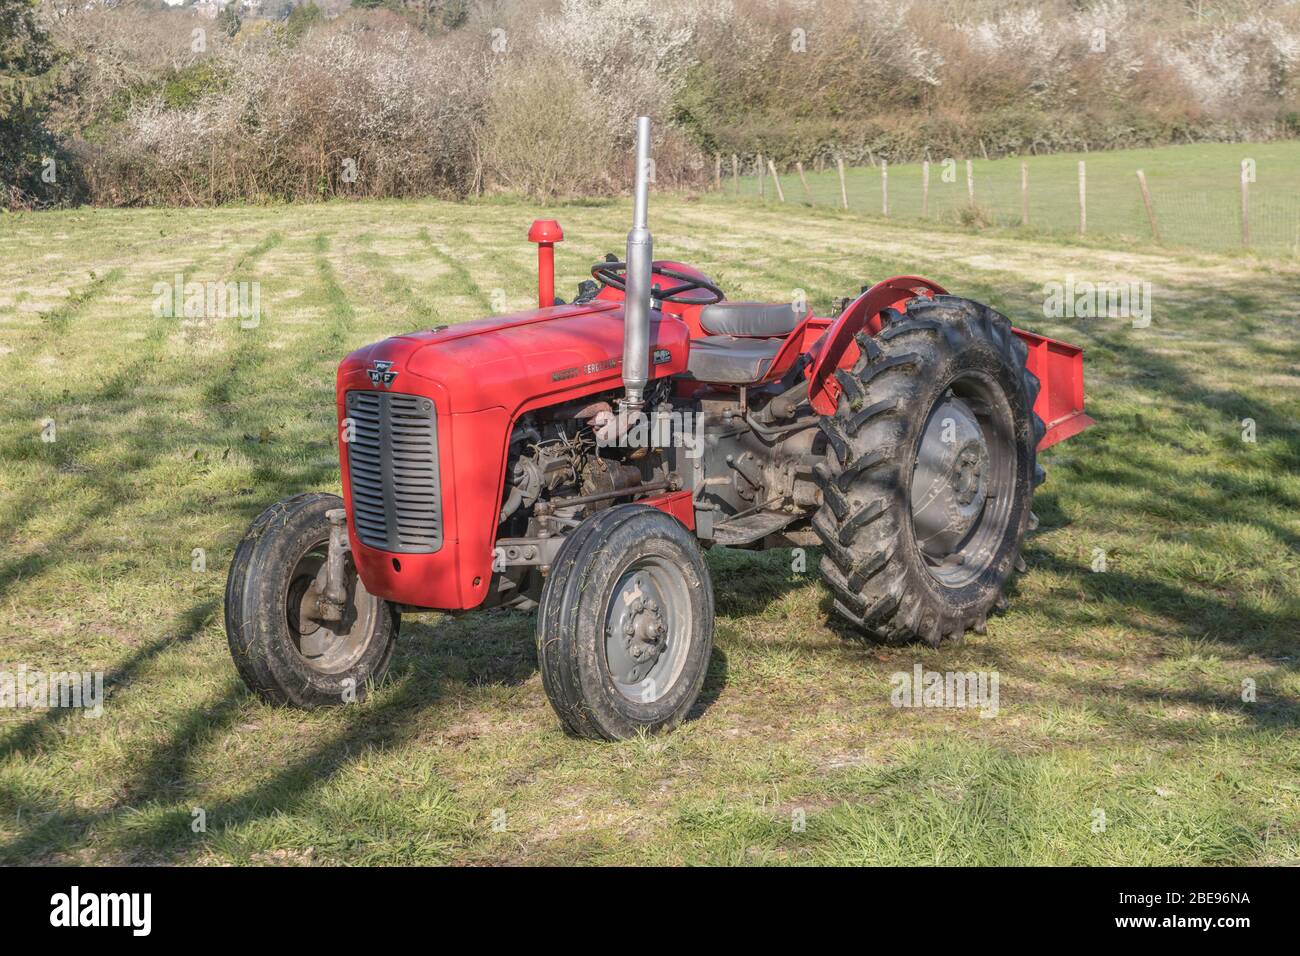 Vecchio trattore rosso parcheggiato in un paddock soleggiato / piccolo campo. Il trattore classico britannico si ritiene un Massey Ferguson 35 o una variante. Foto Stock